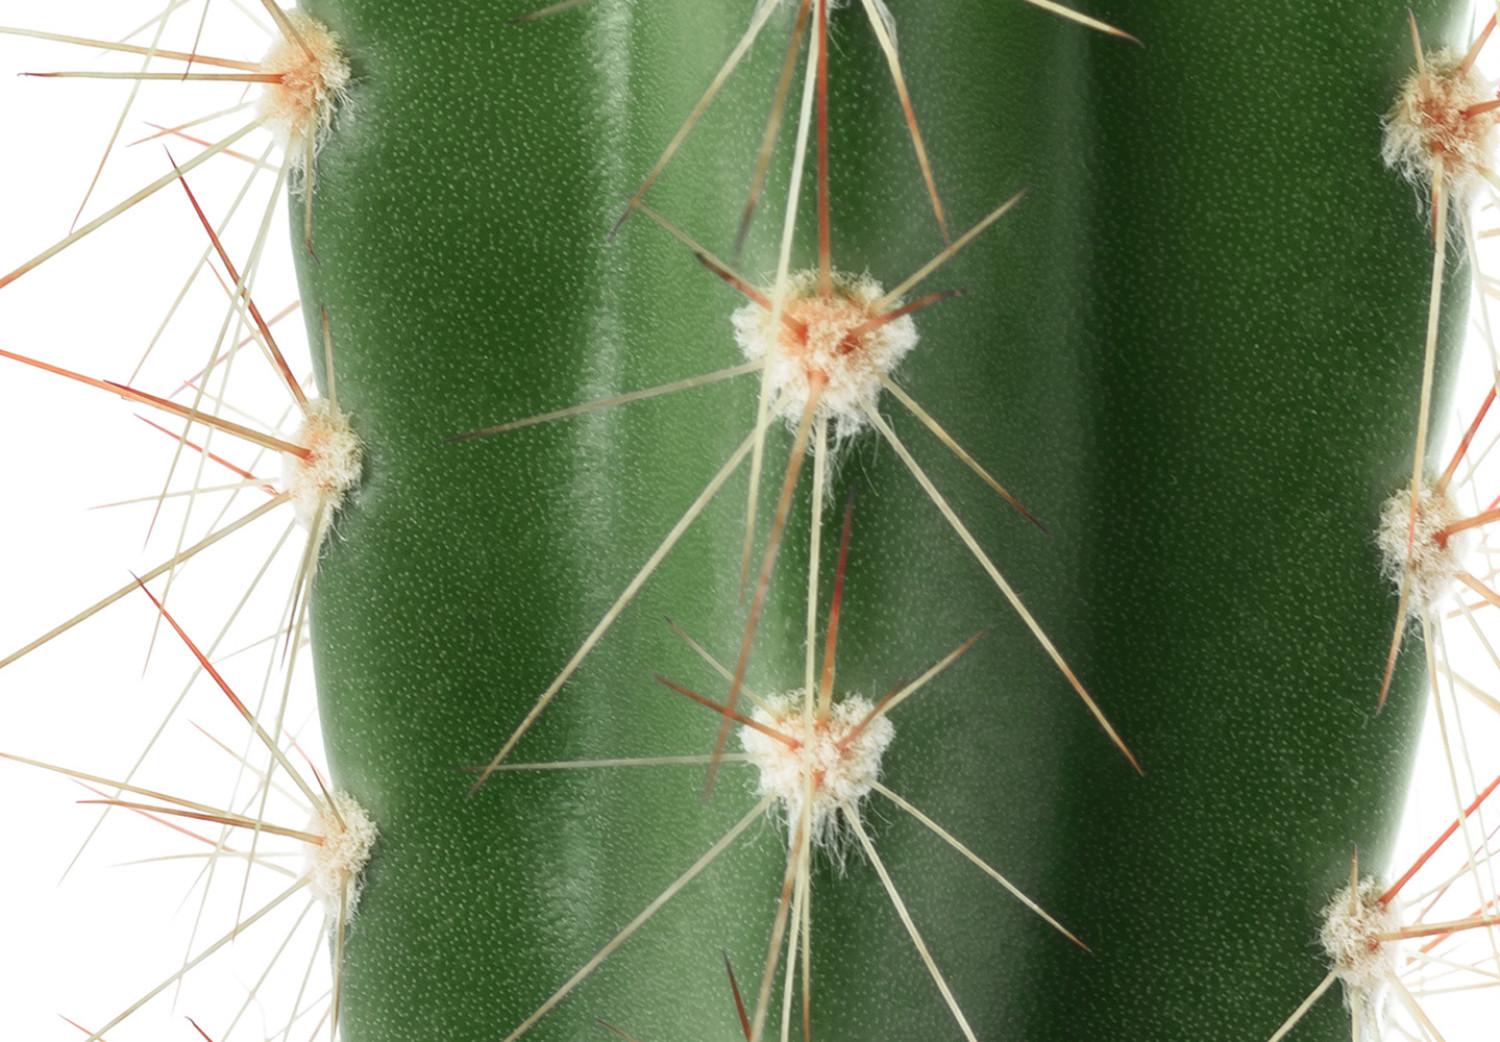 Set de poster Cactus vivo - planta espinosa verde, ojos blanco